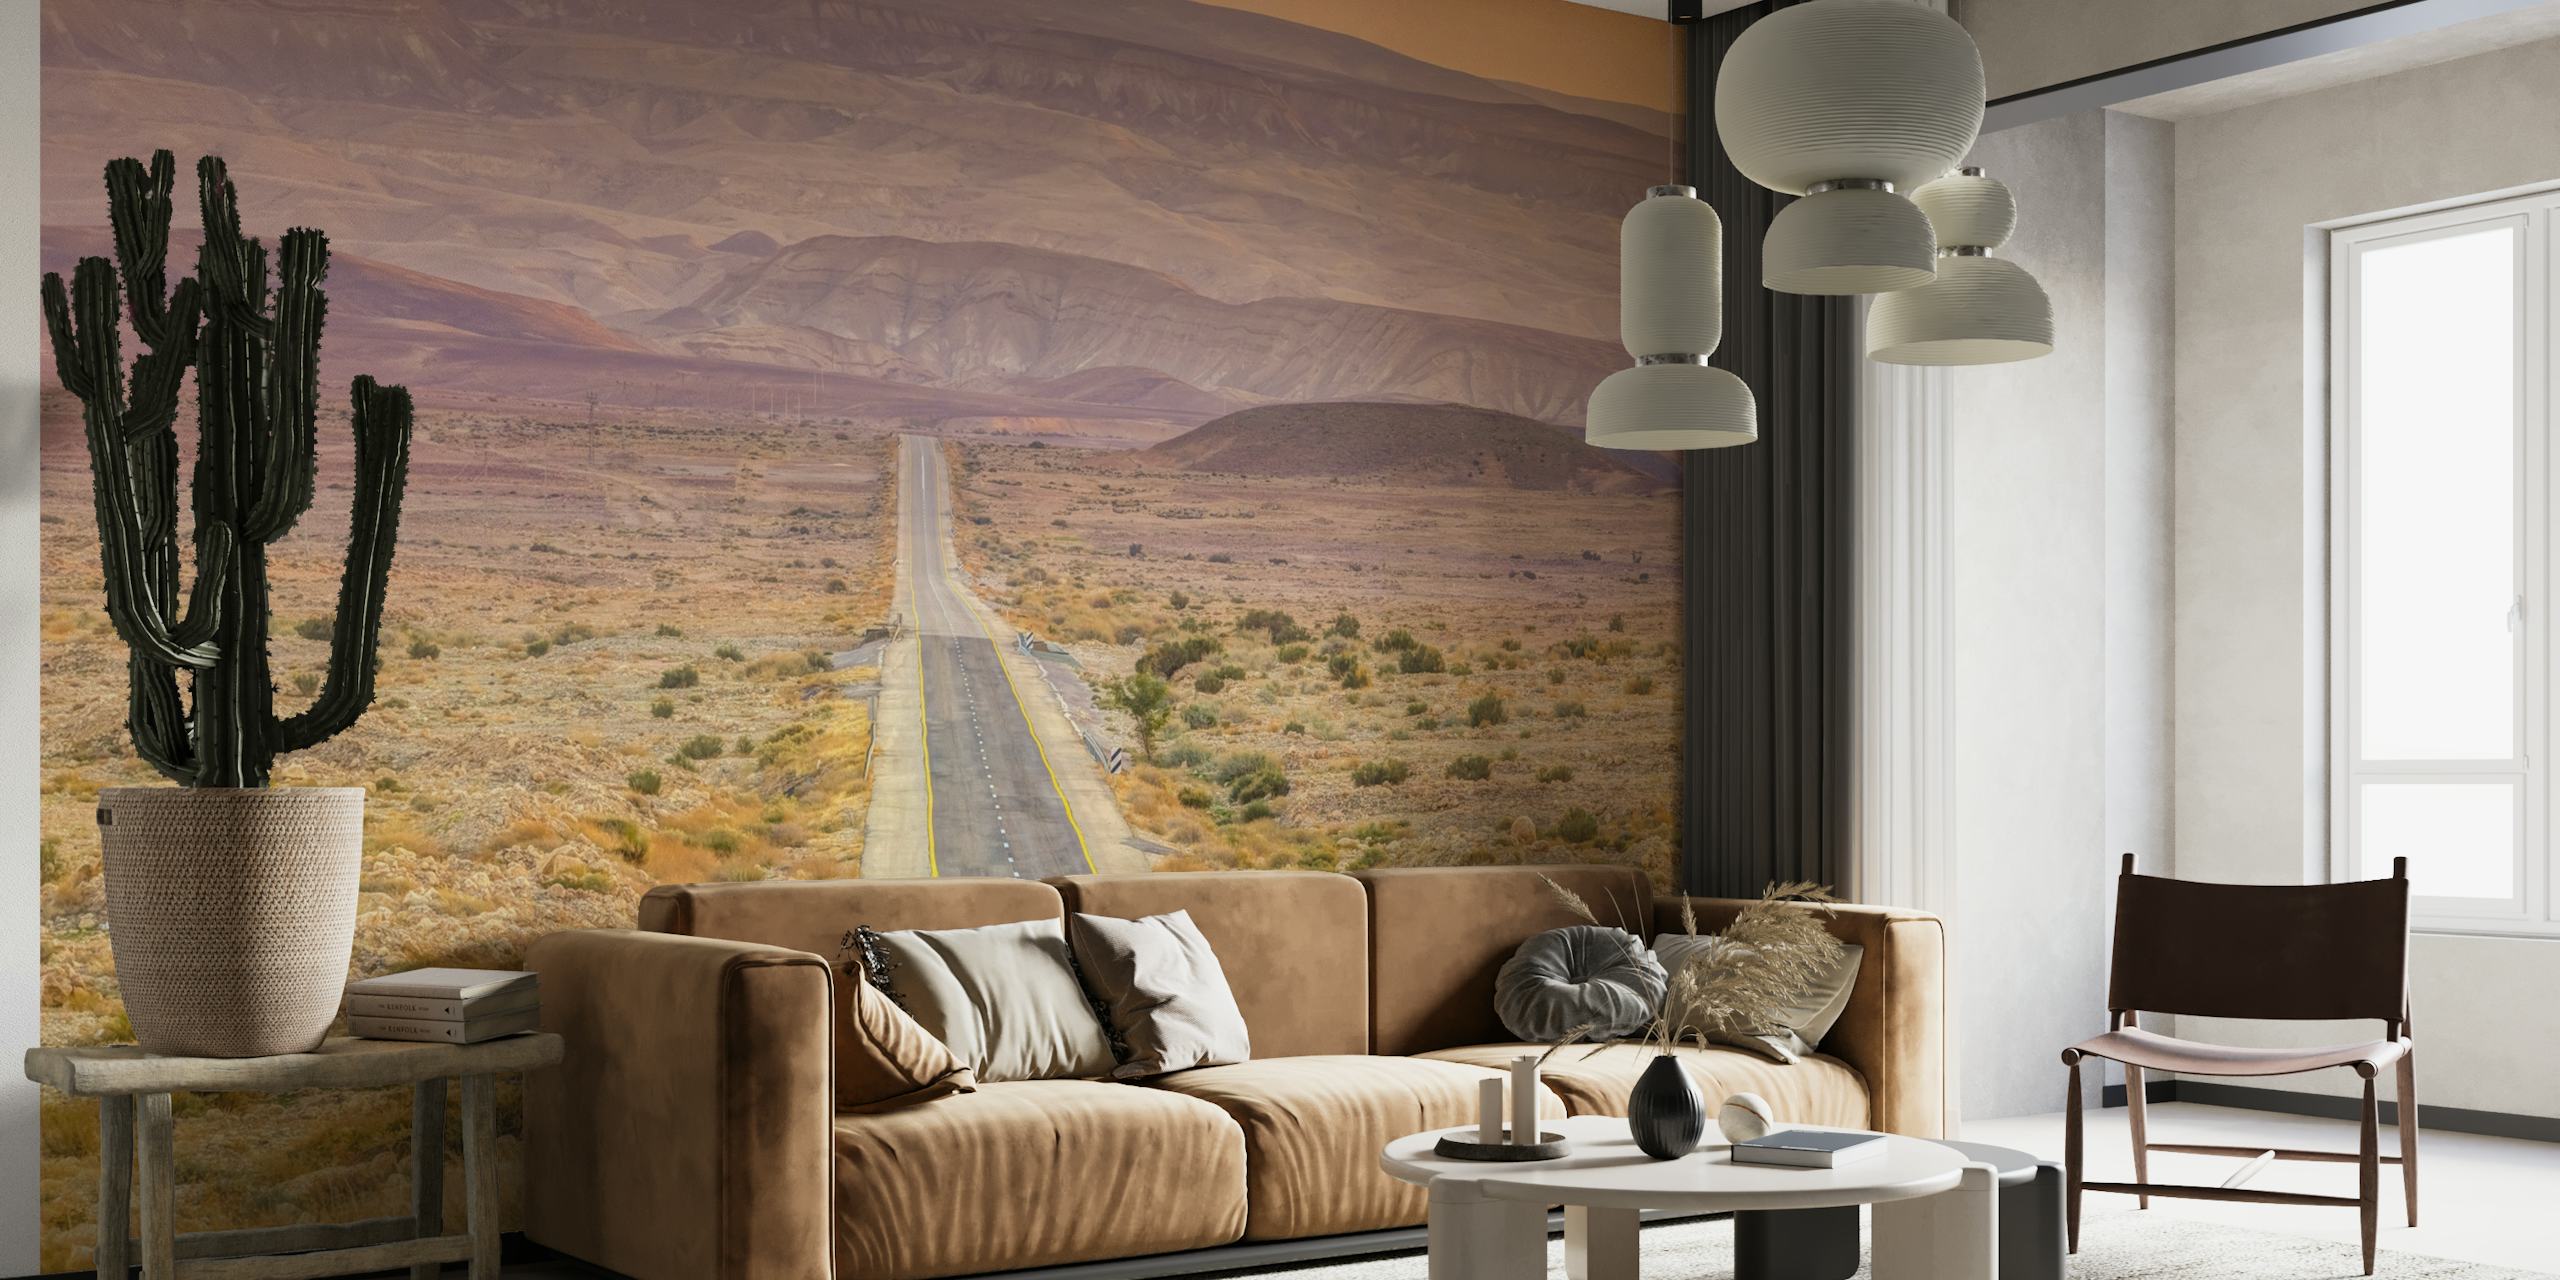 Highway through desert papel pintado